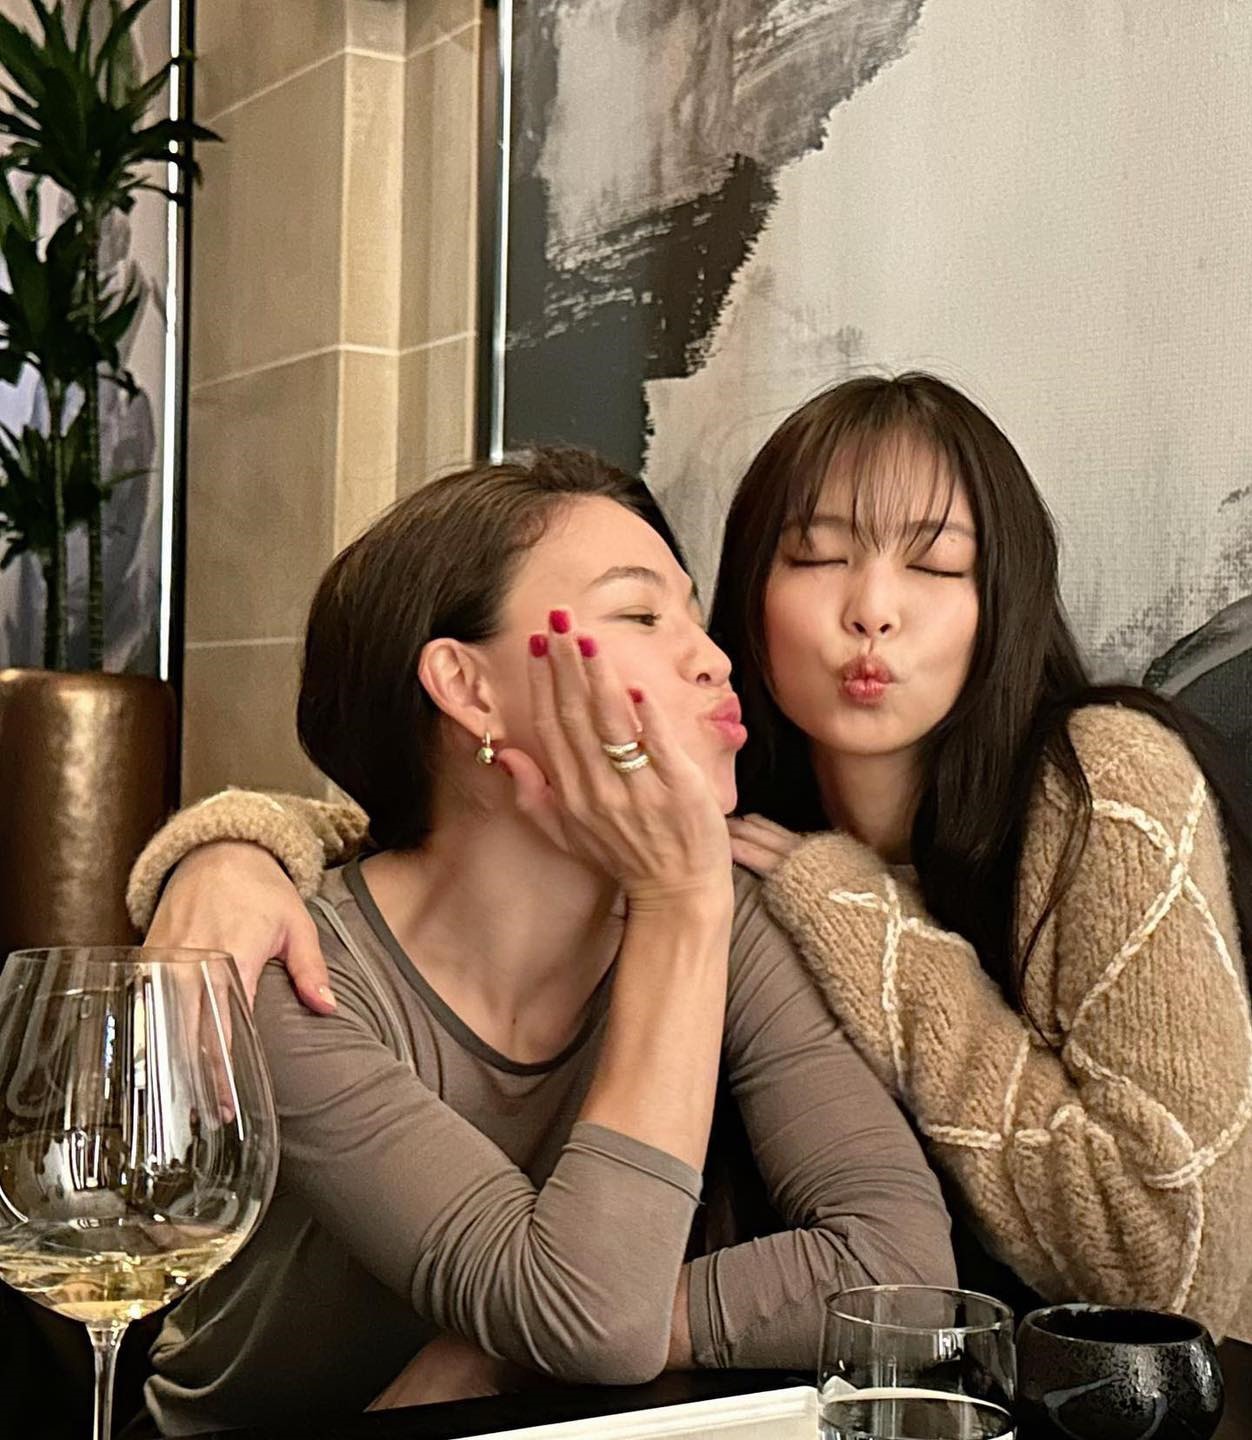 Nhìn những hình ảnh vui vẻ của Jennie, nhiều người cũng thở phào vì dường như cô không mấy bận tâm tới những gì đang diễn ra. Ảnh: Instagram olivia_in_korea.